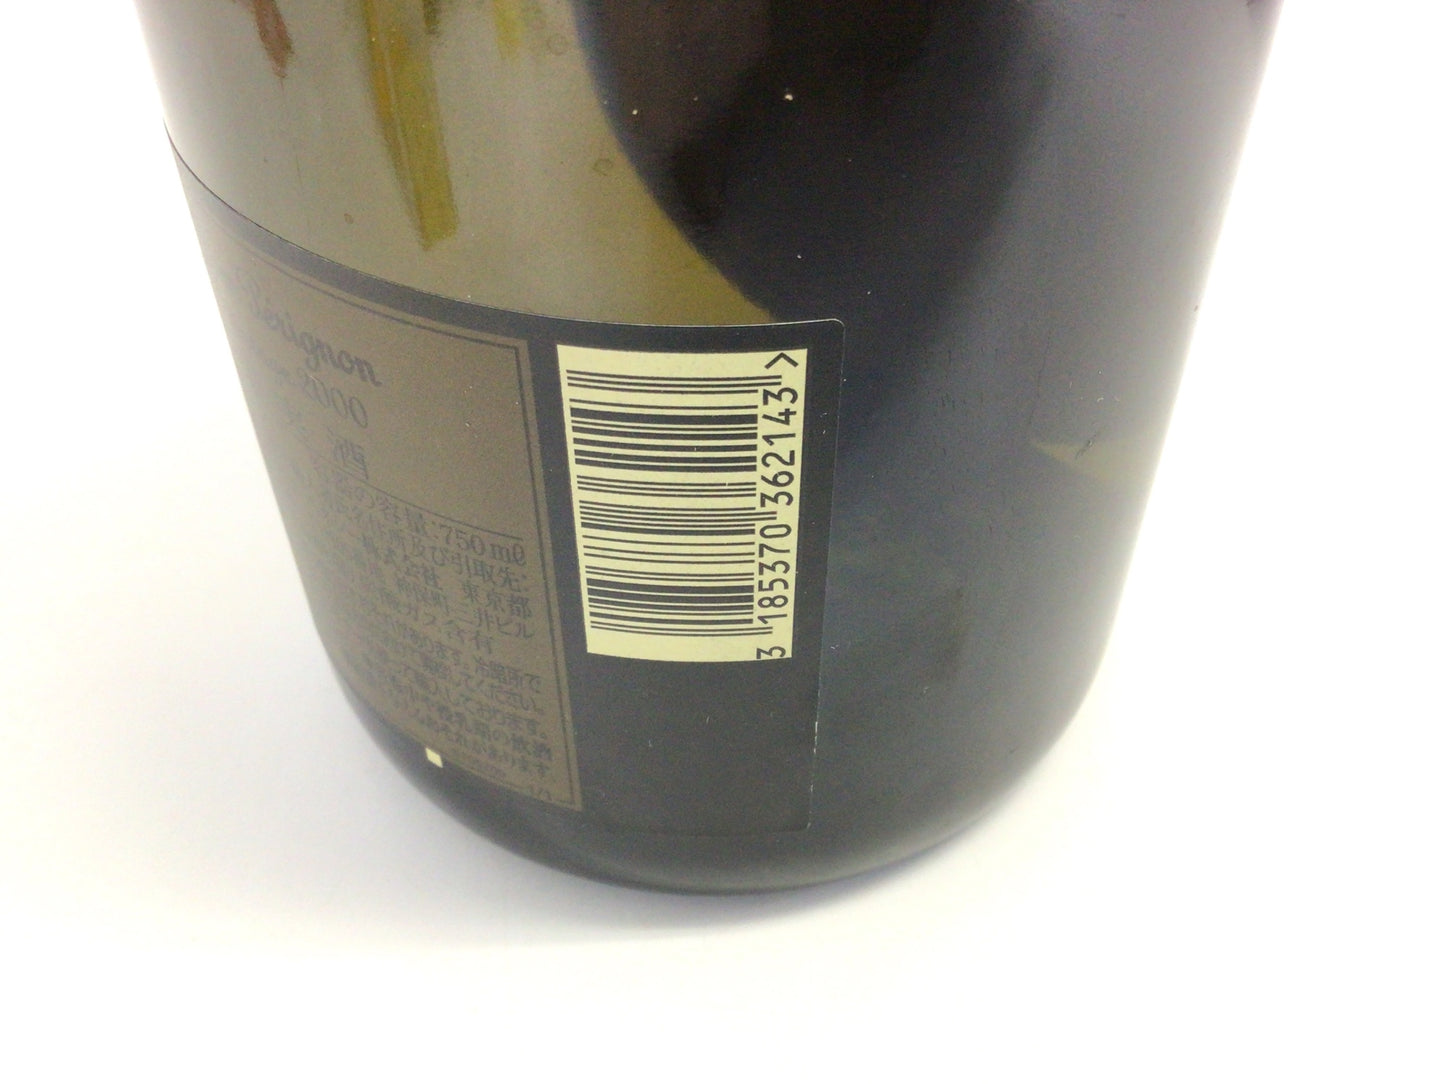 シャンパン ドン・ペリニヨン ヴィンテージ 2000 ブリュット 750ml 重量番号:2 (Z−2)